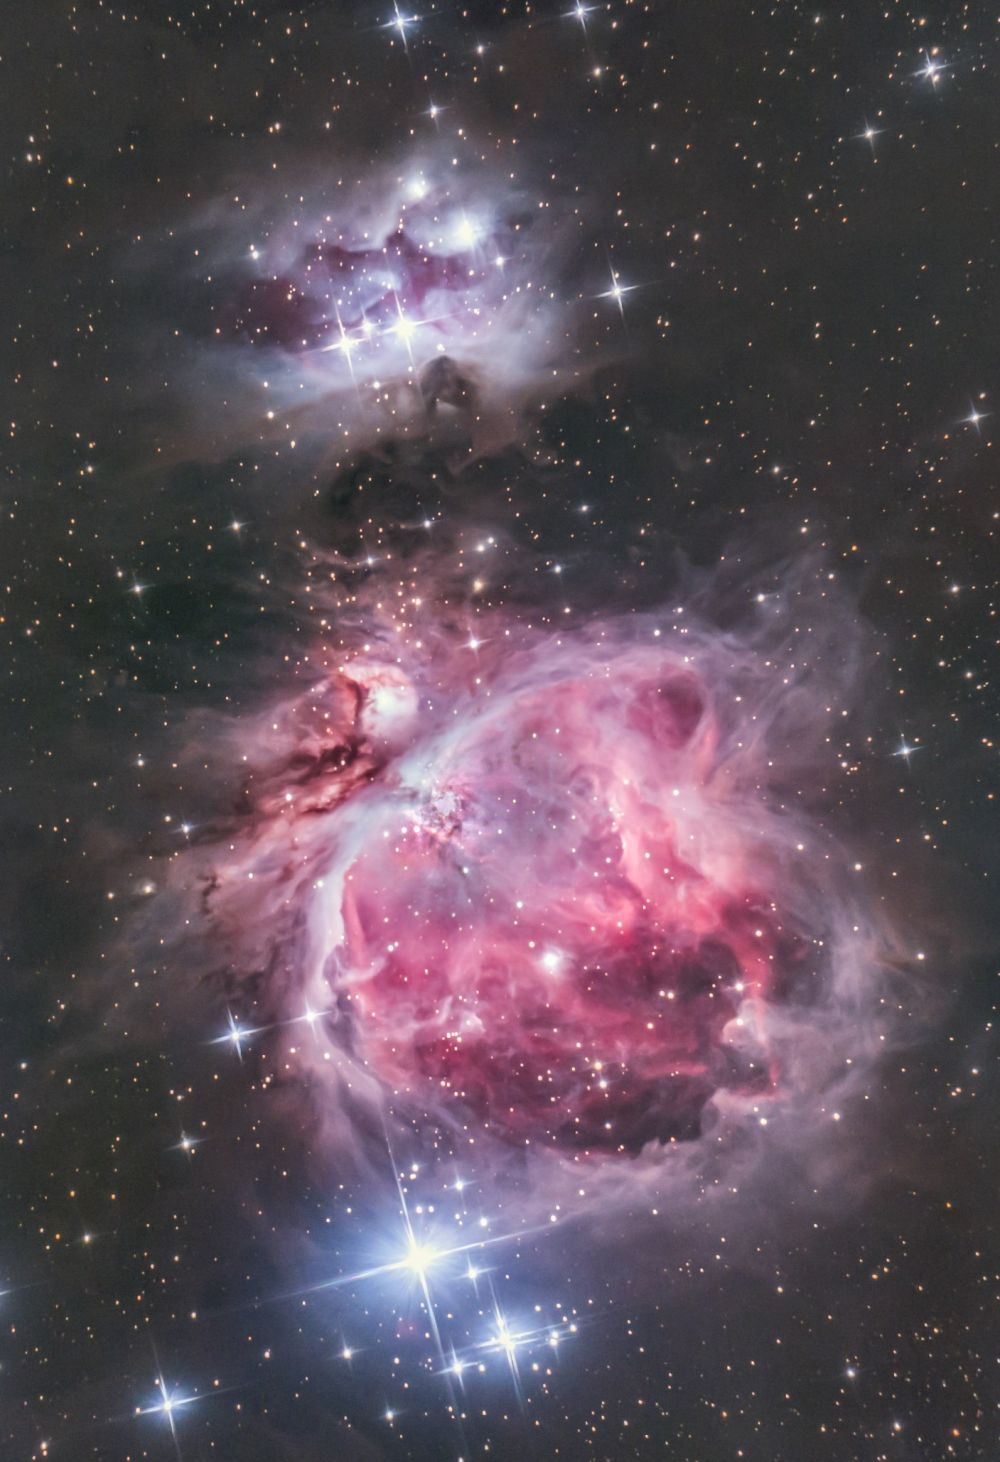 M42, Running Man nebula